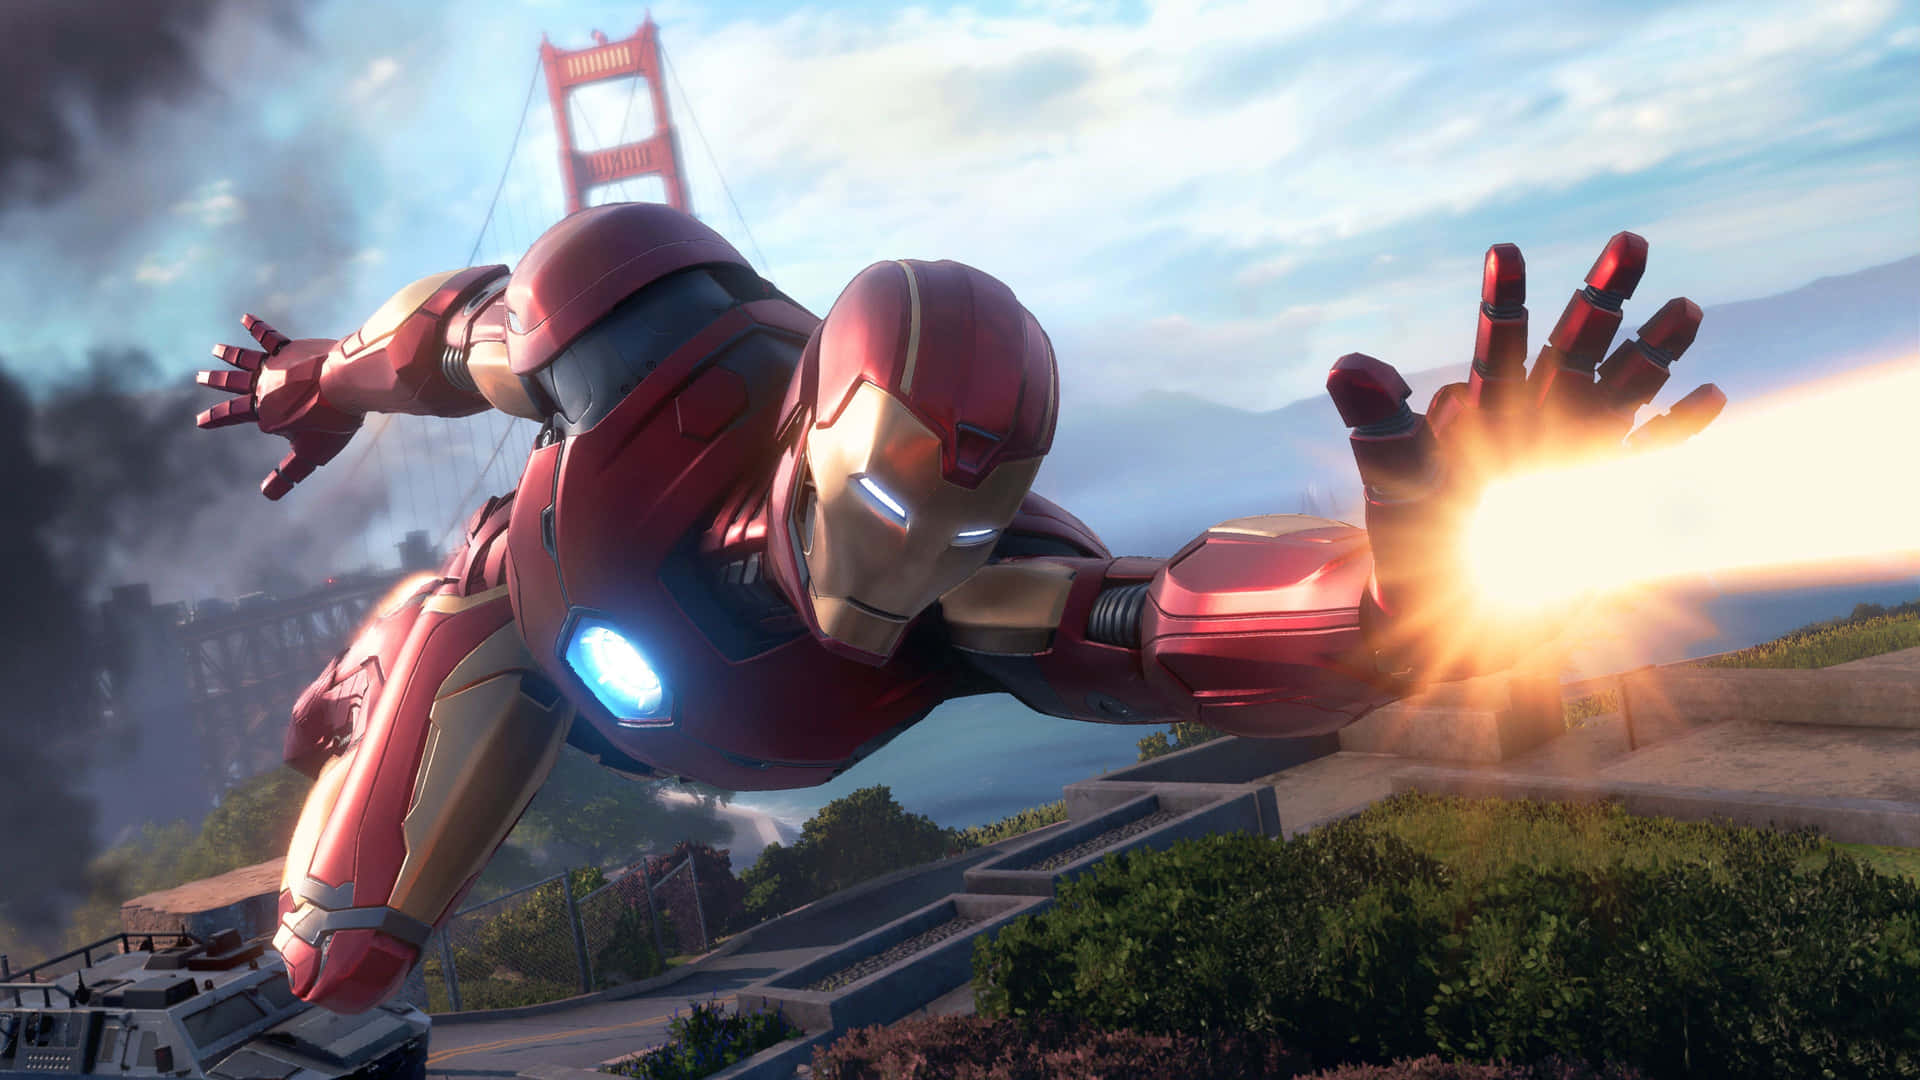 Tony Stark's alter-ego Iron Man flyver højt, klar til at tage enhver udfordring for hånden. Wallpaper